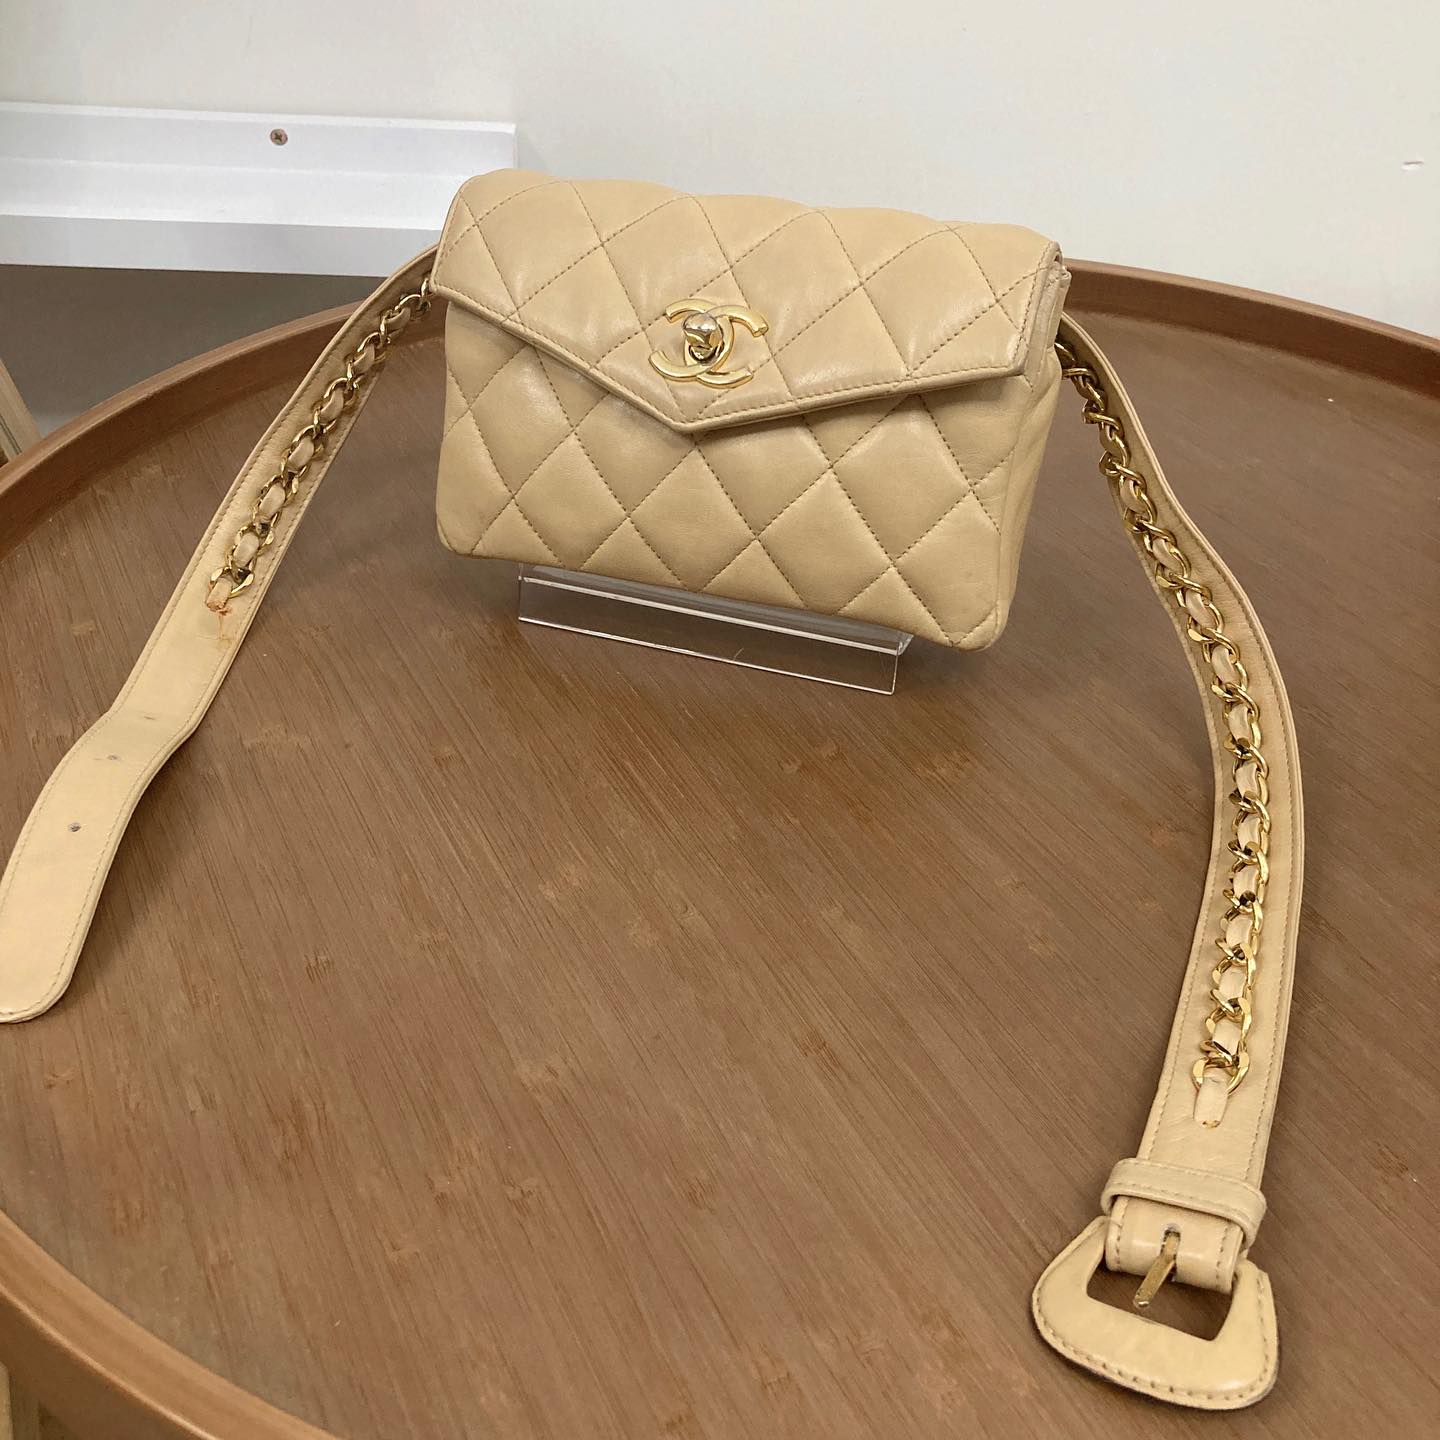 Chanel Belt Bag 腰包